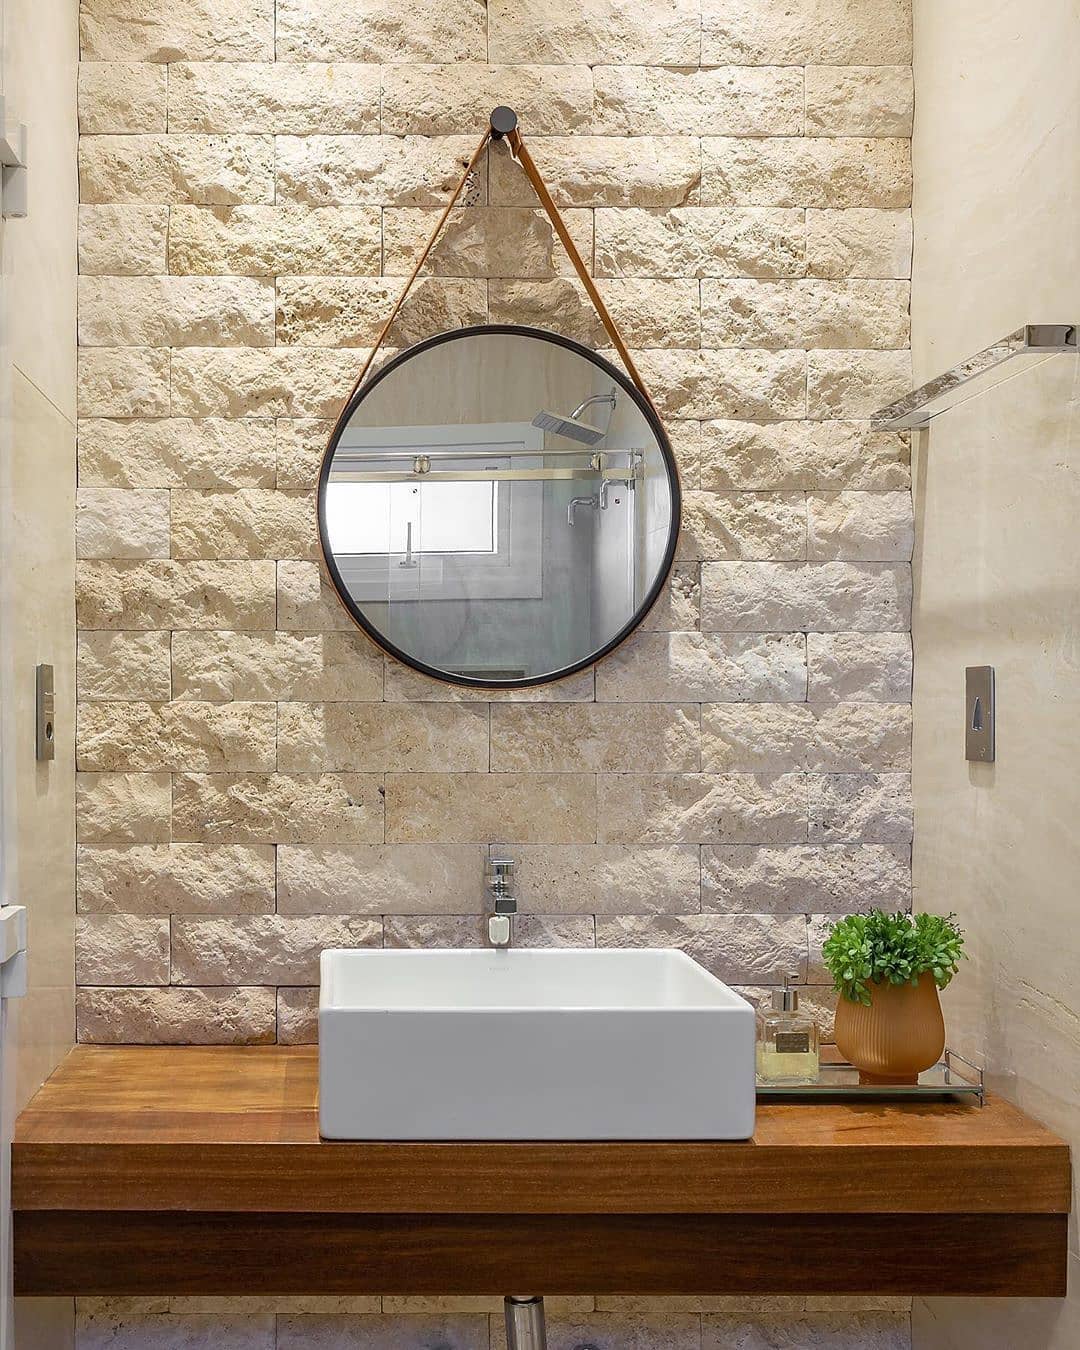 miroir adnet rond dans la salle de bain avec revêtement en pierre